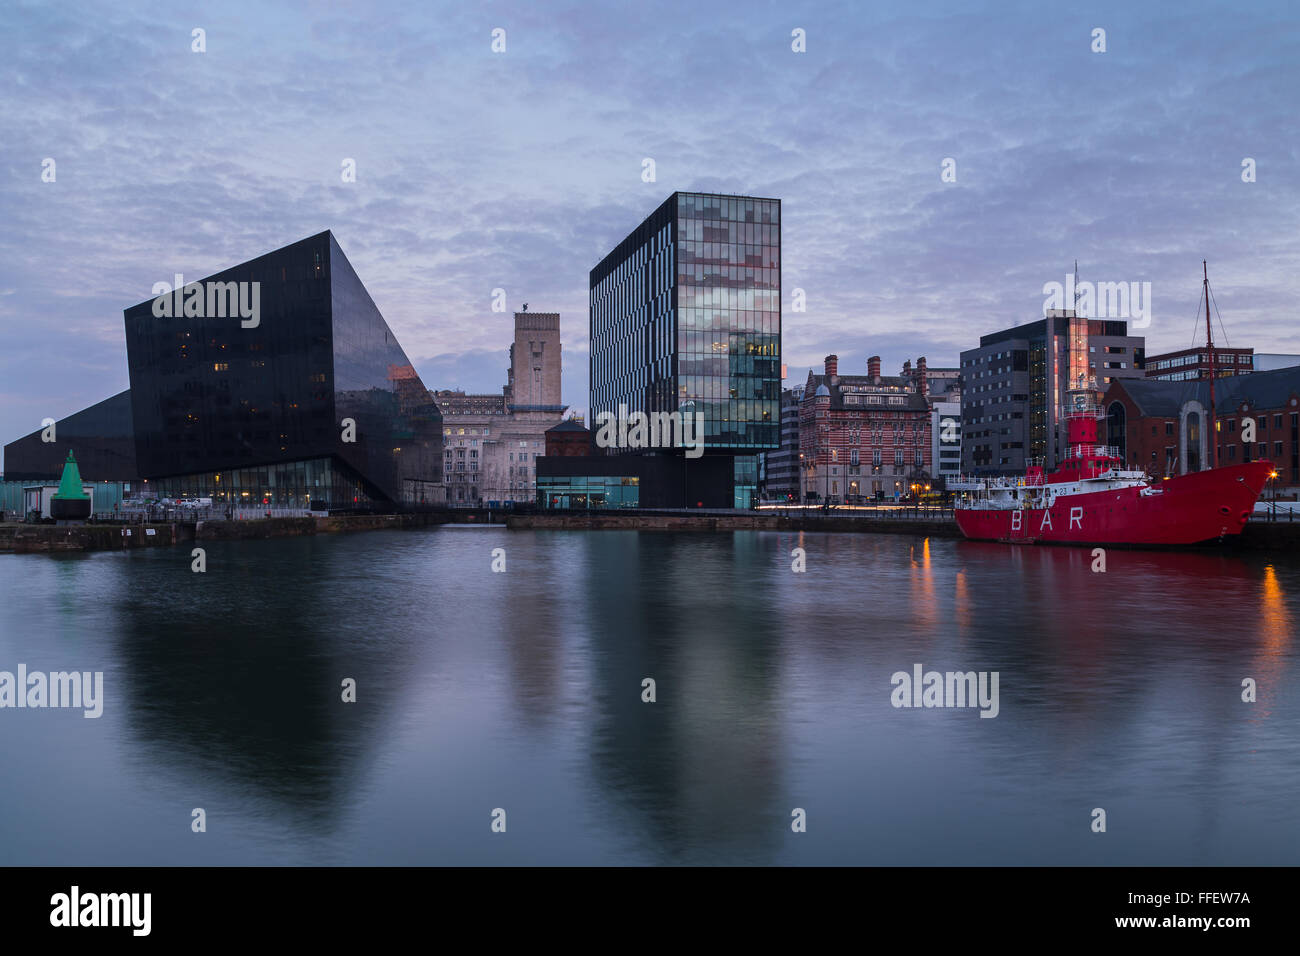 Bürohäuser & Wohnungen Mann Insel spiegeln in dem ruhigen Wasser der Canning Dock an der Uferpromenade von Liverpool. Stockfoto